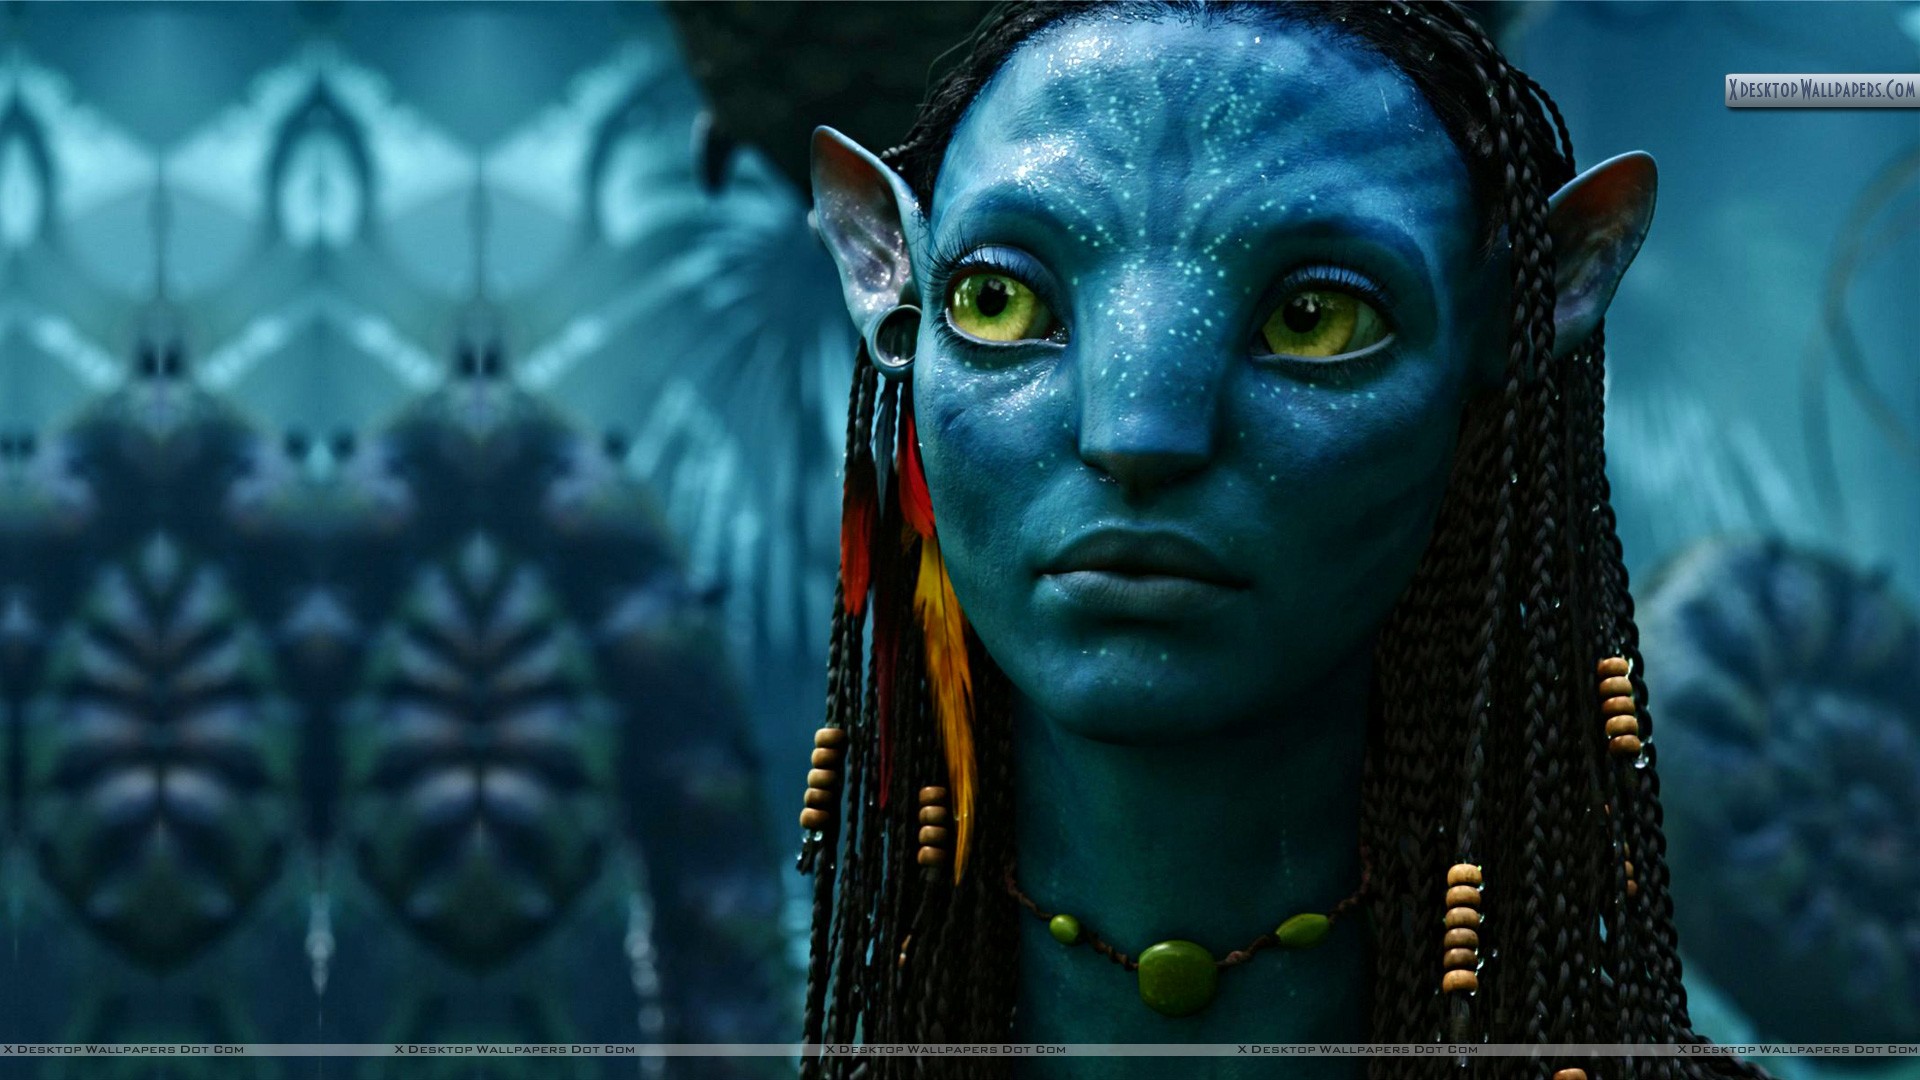 Hình nền Avatar cho máy tính là cách tuyệt vời để thể hiện sự yêu mến với bộ phim tuyệt đỉnh này. Những hình ảnh đầy màu sắc và kỳ diệu sẽ giúp cho máy tính của bạn trở nên sinh động hơn bao giờ hết.